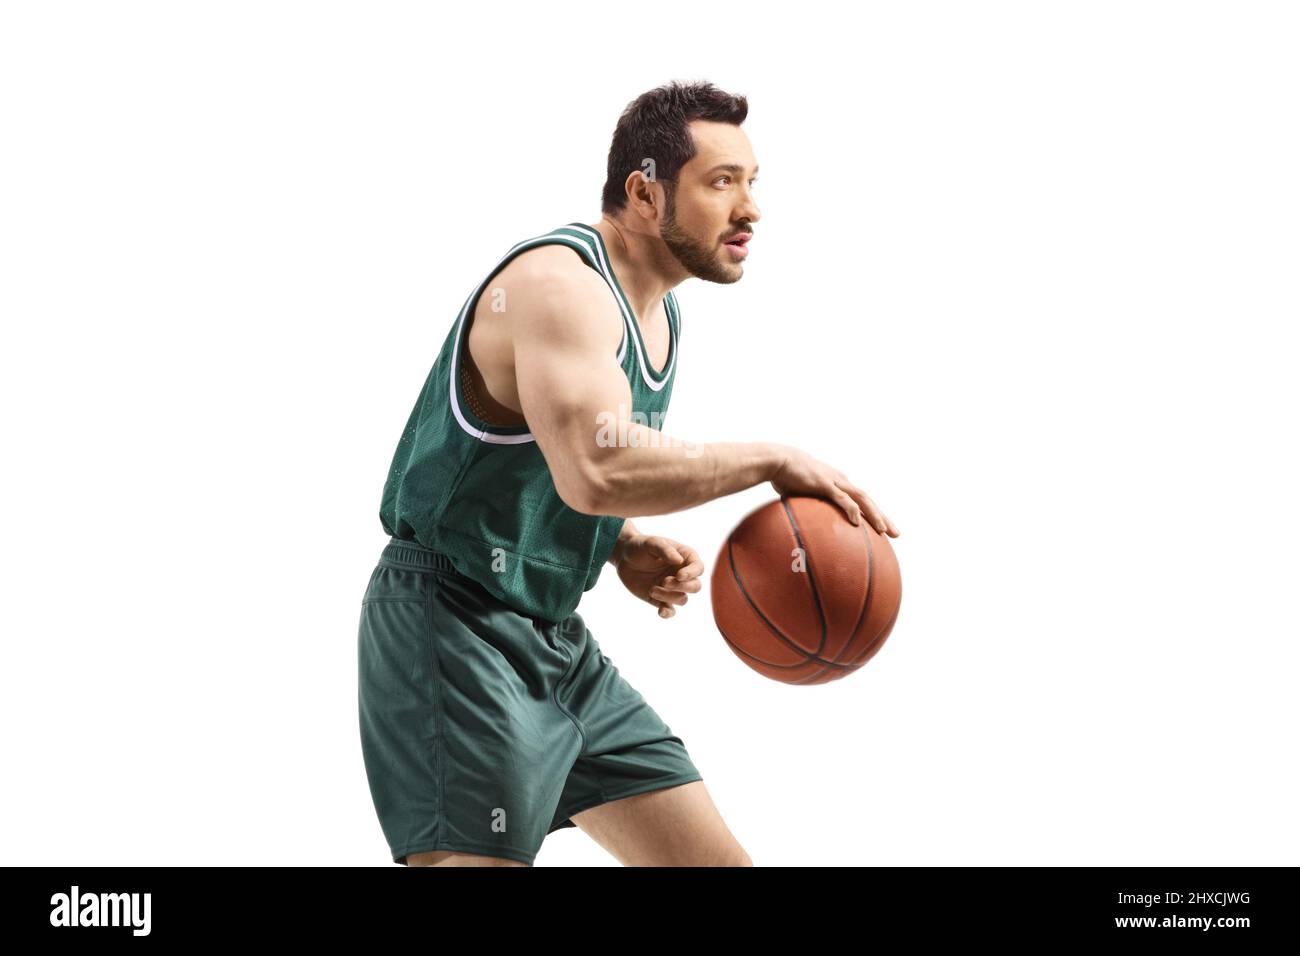 Joueur de basket-ball qui joue avec une balle isolée sur fond blanc Banque D'Images